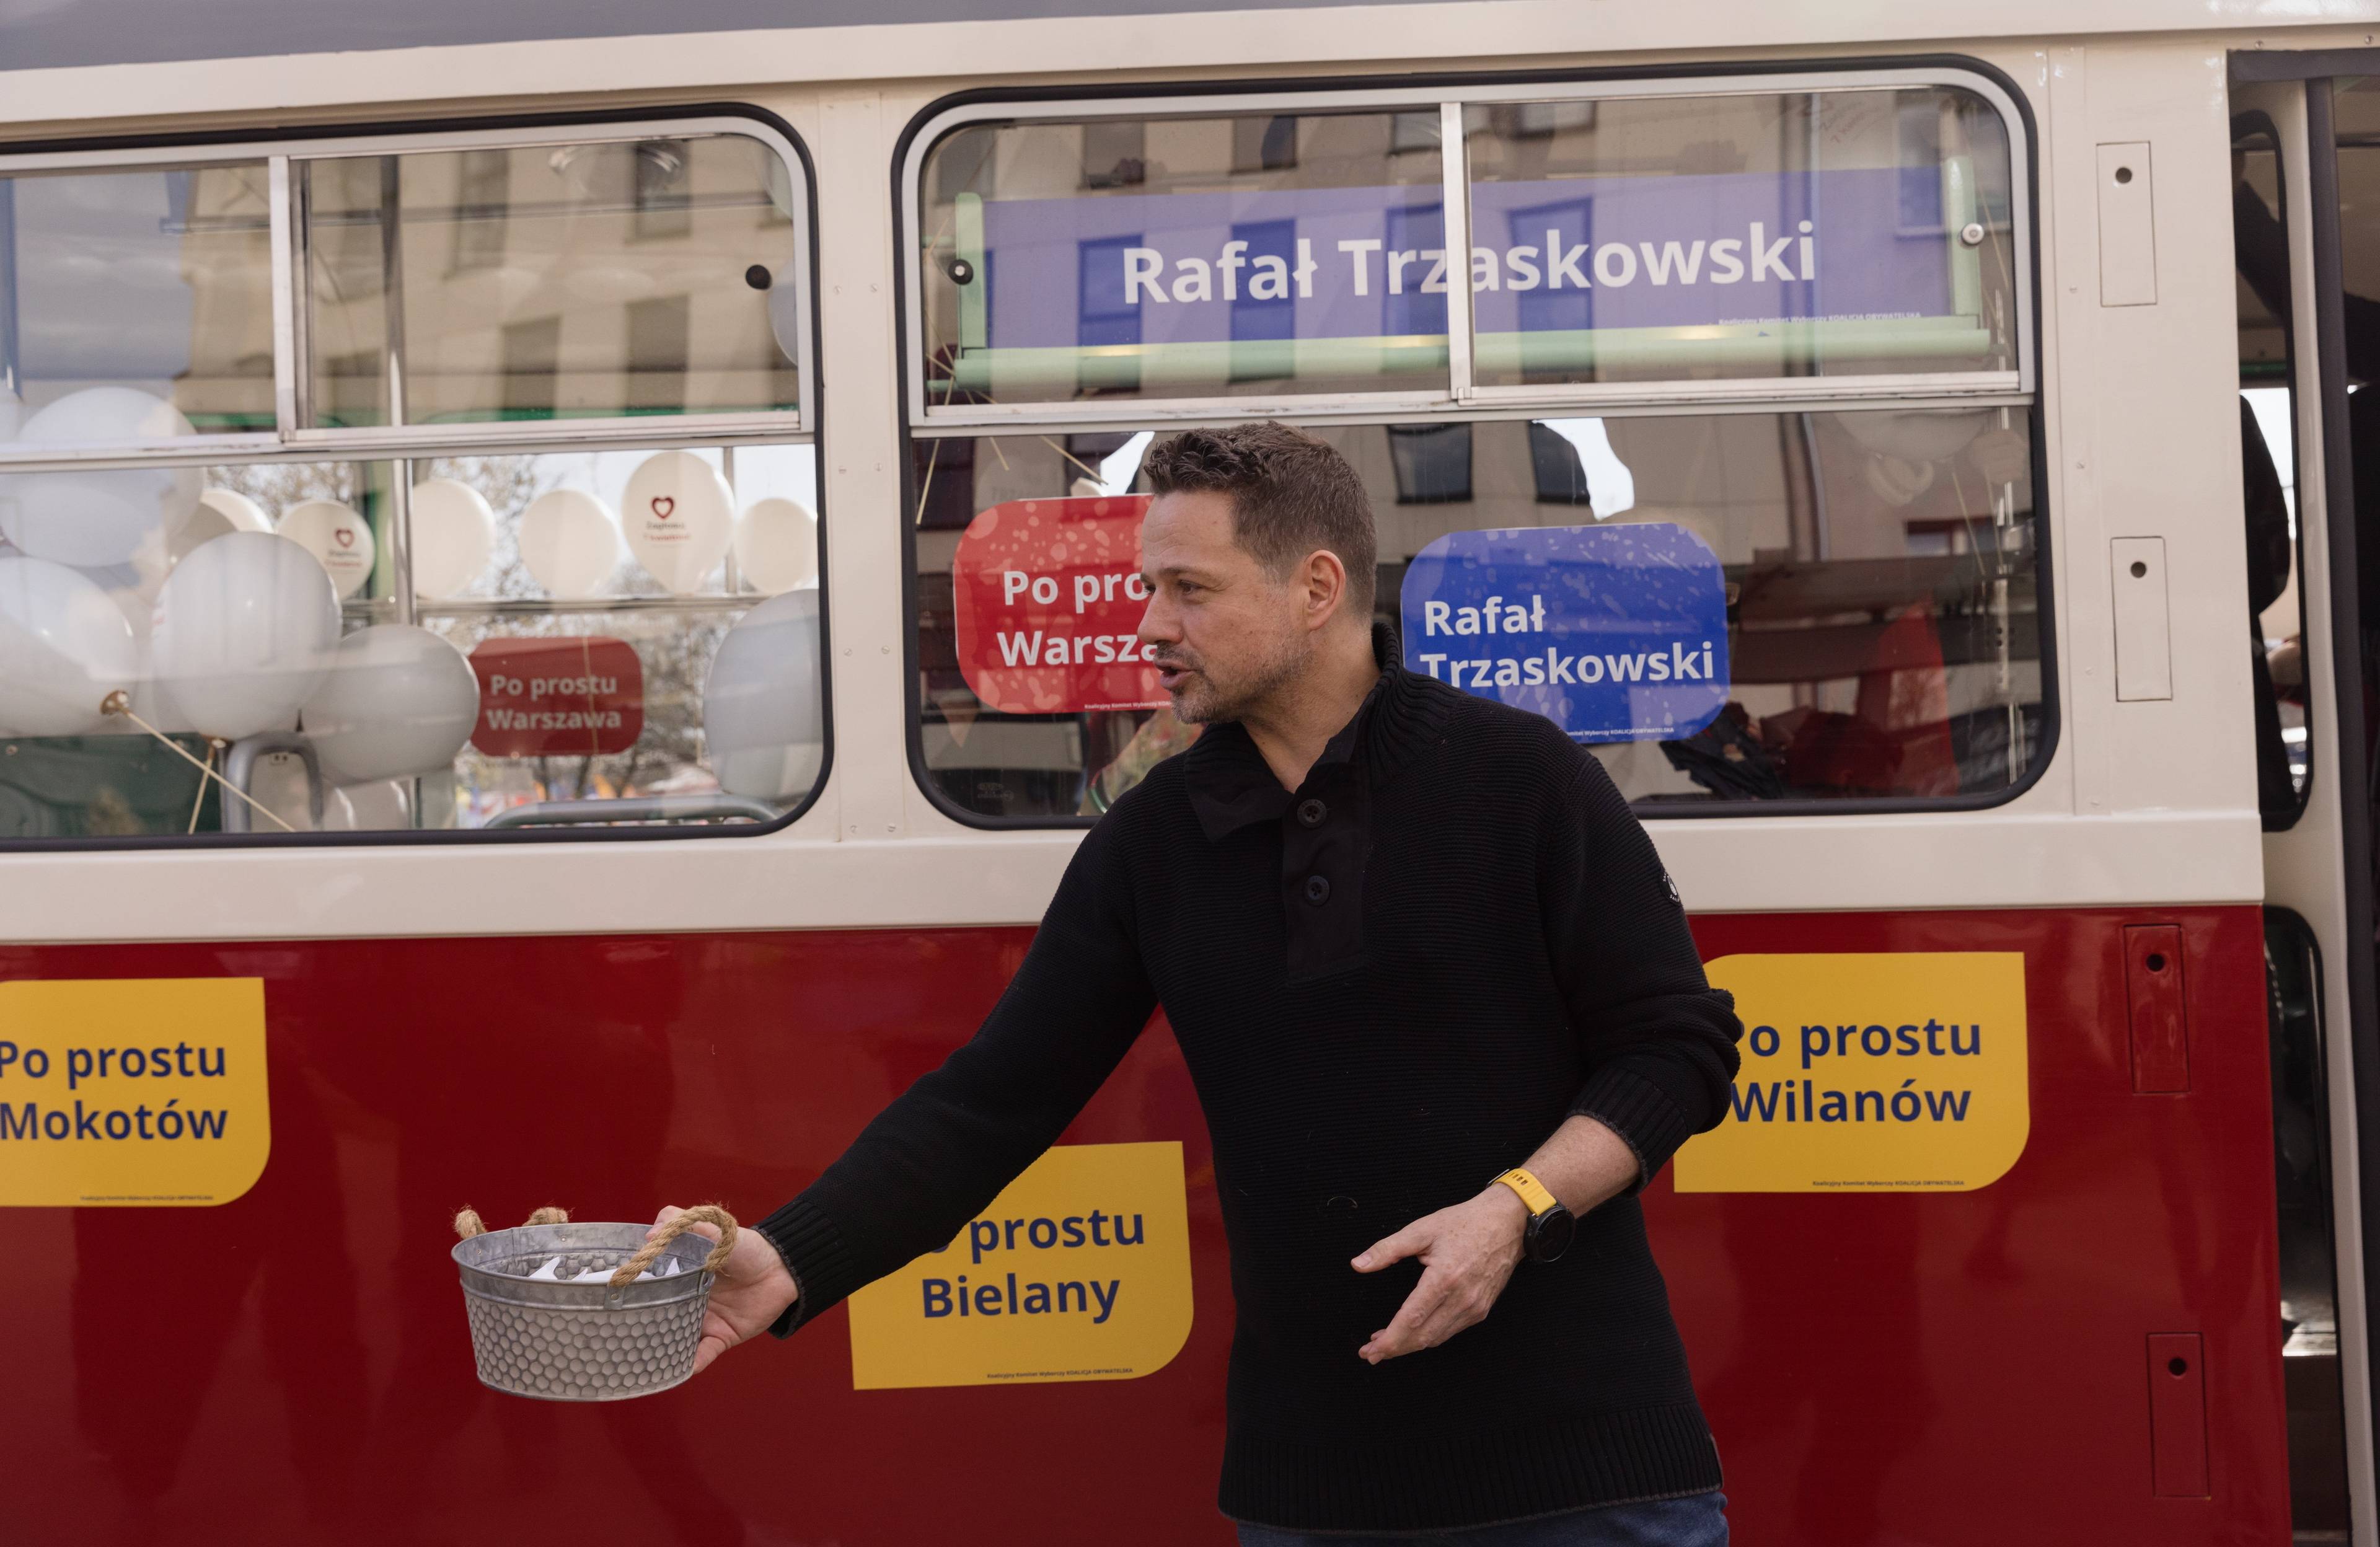 Rafał Trzaskowski rozdaje cukierki przed tramwajem oklejonym hasłami jego kampanii wyborczej